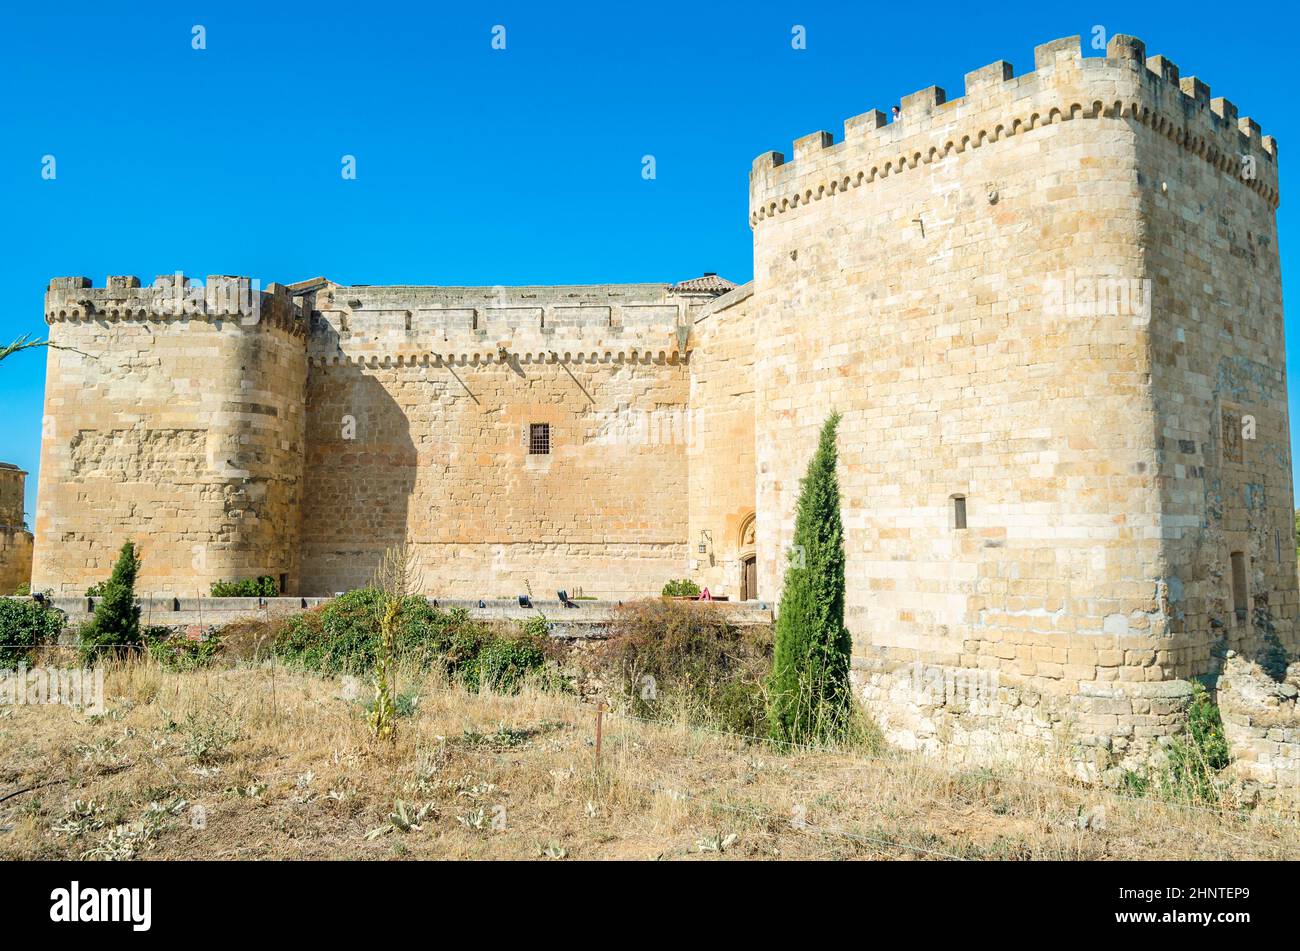 TOPAS, SPANIEN - 22. AUGUST 2021: Das Renaissanceschloss Villanueva del Cañedo (auch bekannt als Castillo del Buen Amor) in Topas, Provinz Salamanca, Spanien, wurde im 15th. Jahrhundert erbaut. Im Jahr 1931 zum Nationaldenkmal erklärt, konvergieren seine derzeitigen Besitzer Stockfoto